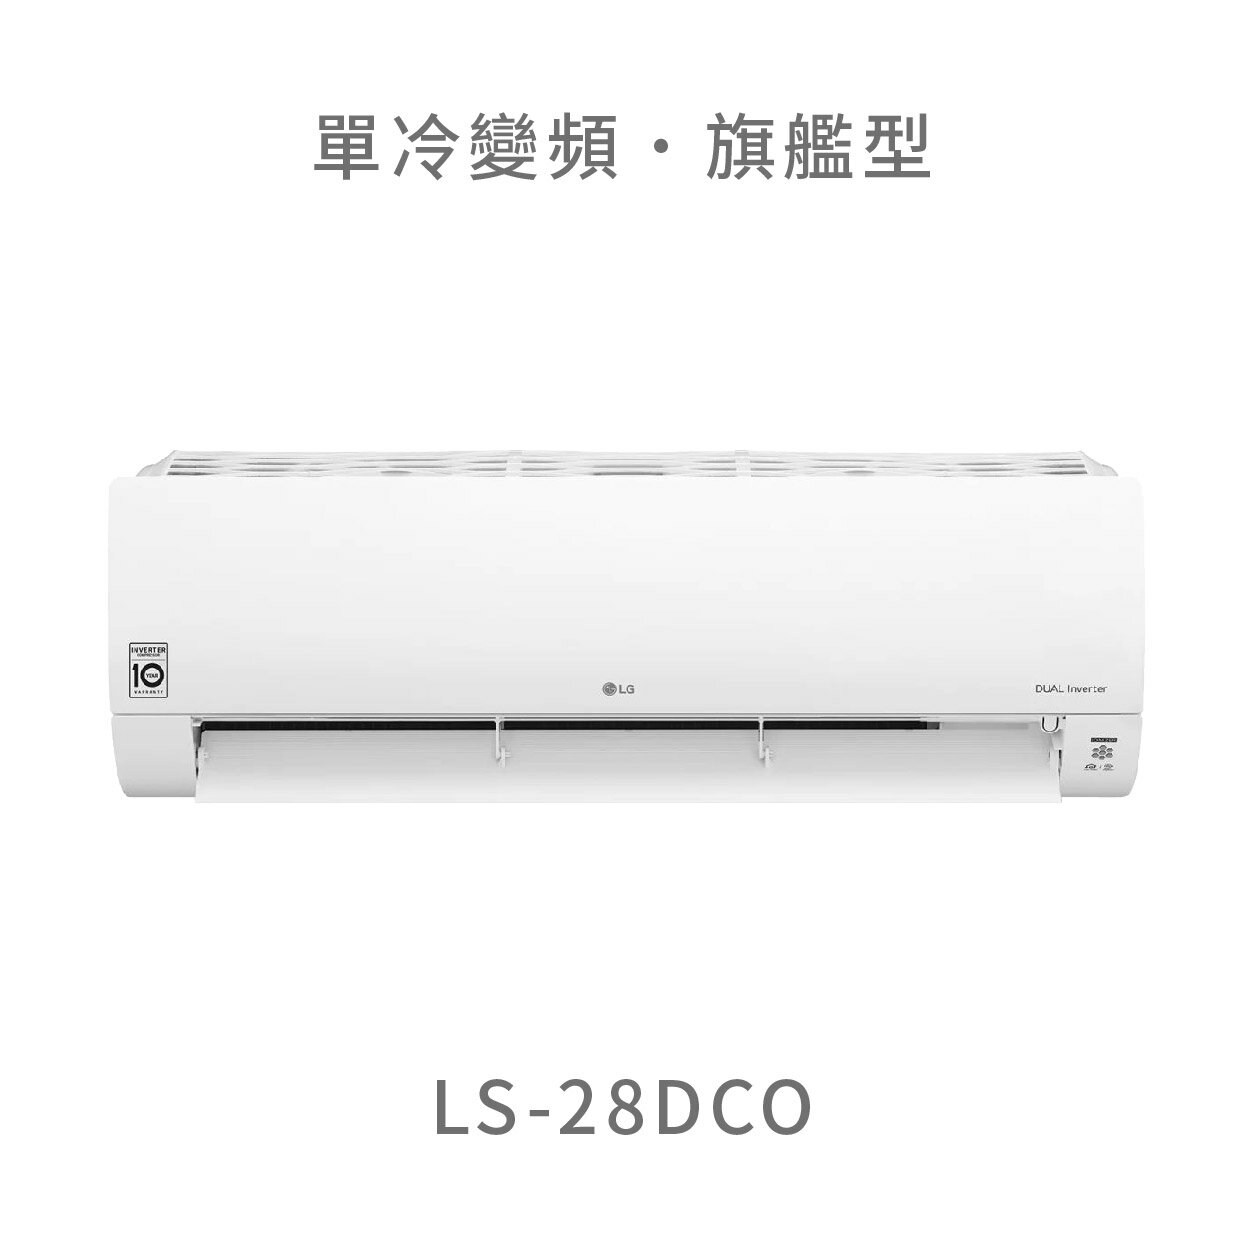 【點數10%回饋】【桃園含標準安裝】 LG LS-28DCO 2.8kw WiFi雙迴轉變頻空調 - 旗艦單冷型